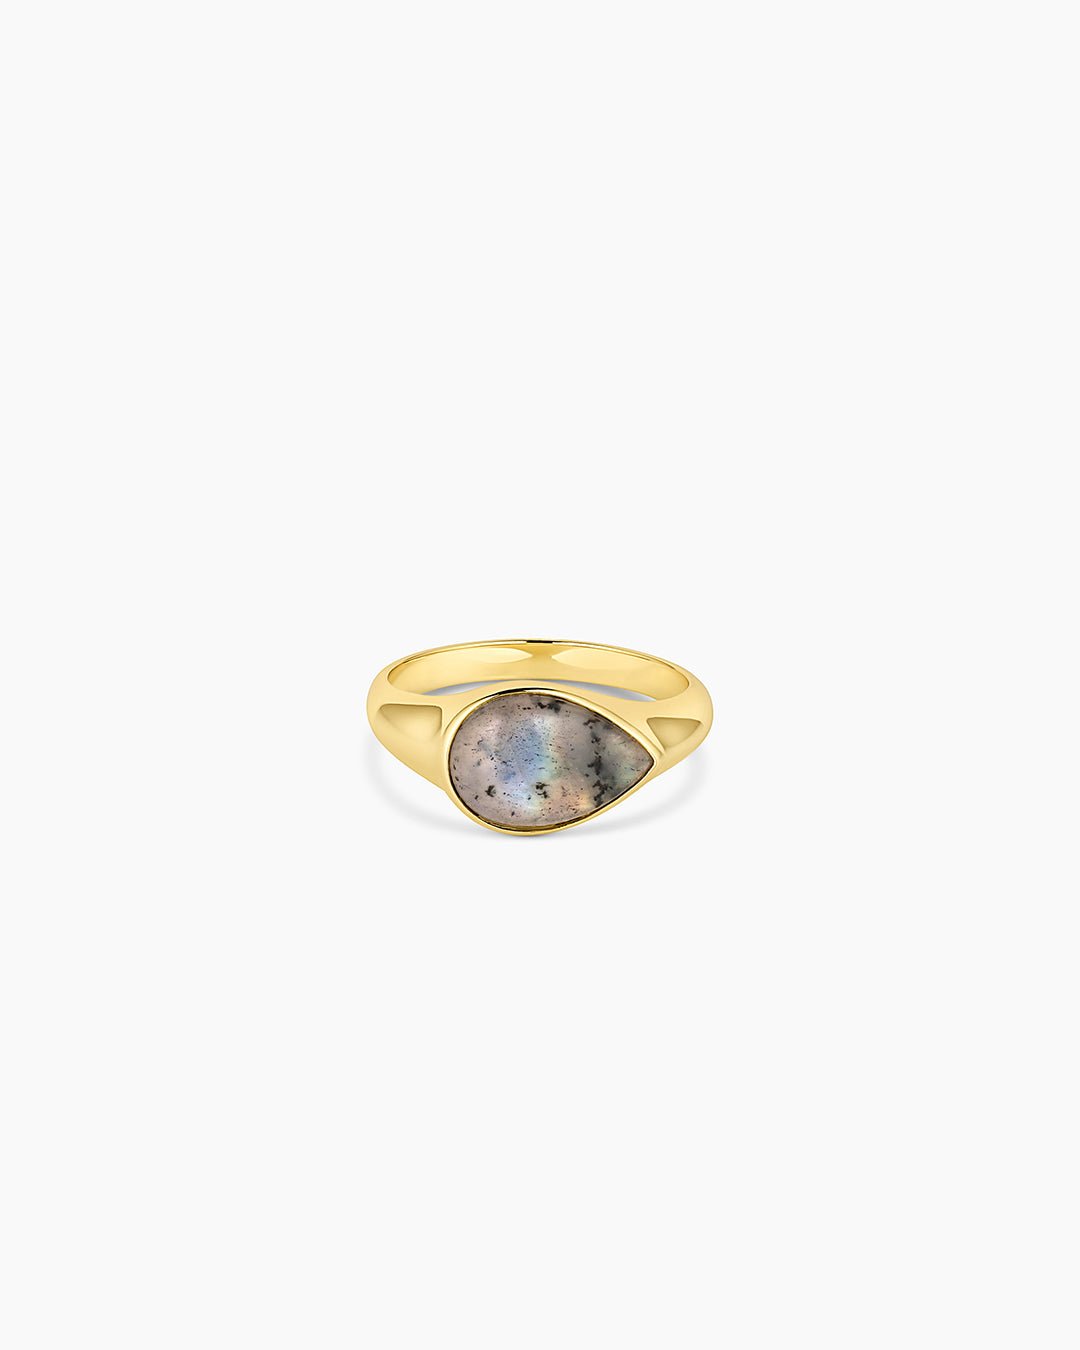 Lou Gemstone Ring - Labradorite || option::Gold Plated